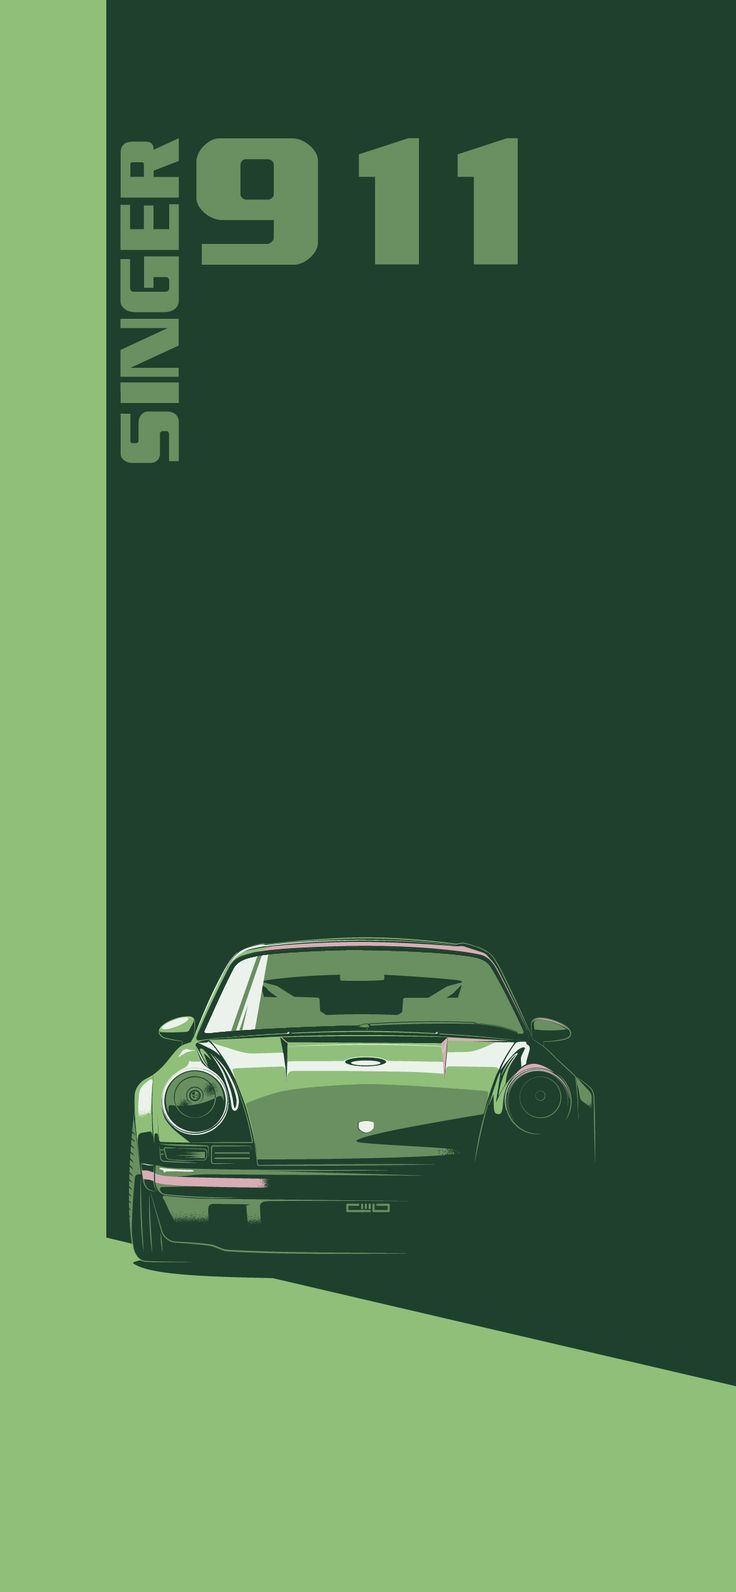 Porsche 911 iPhone wallpaper